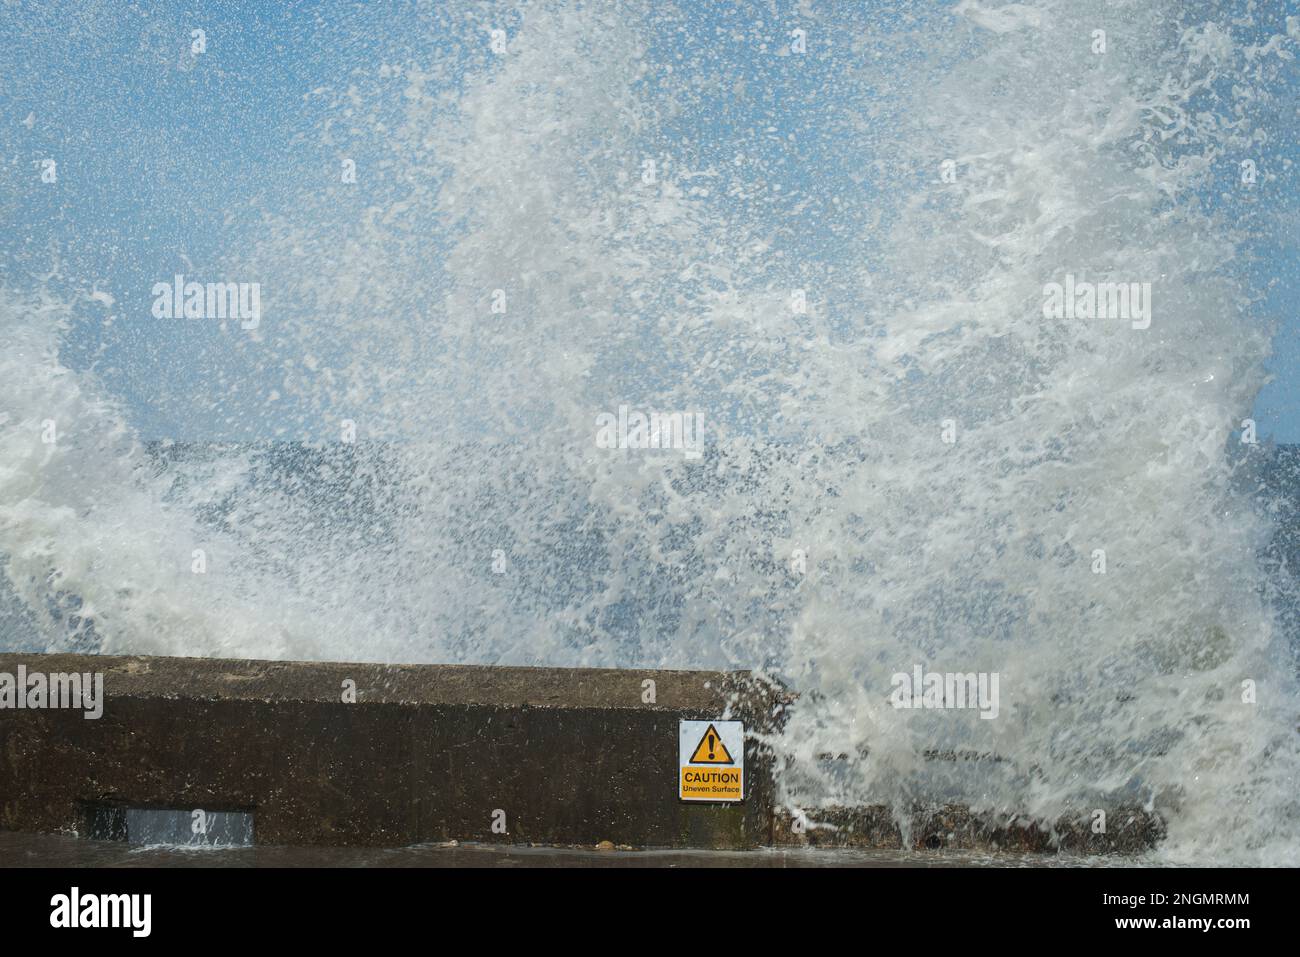 Des vagues écrasant jettent d'énormes colonnes de pulvérisation qui ont éclaté sur la promenade en béton Banque D'Images